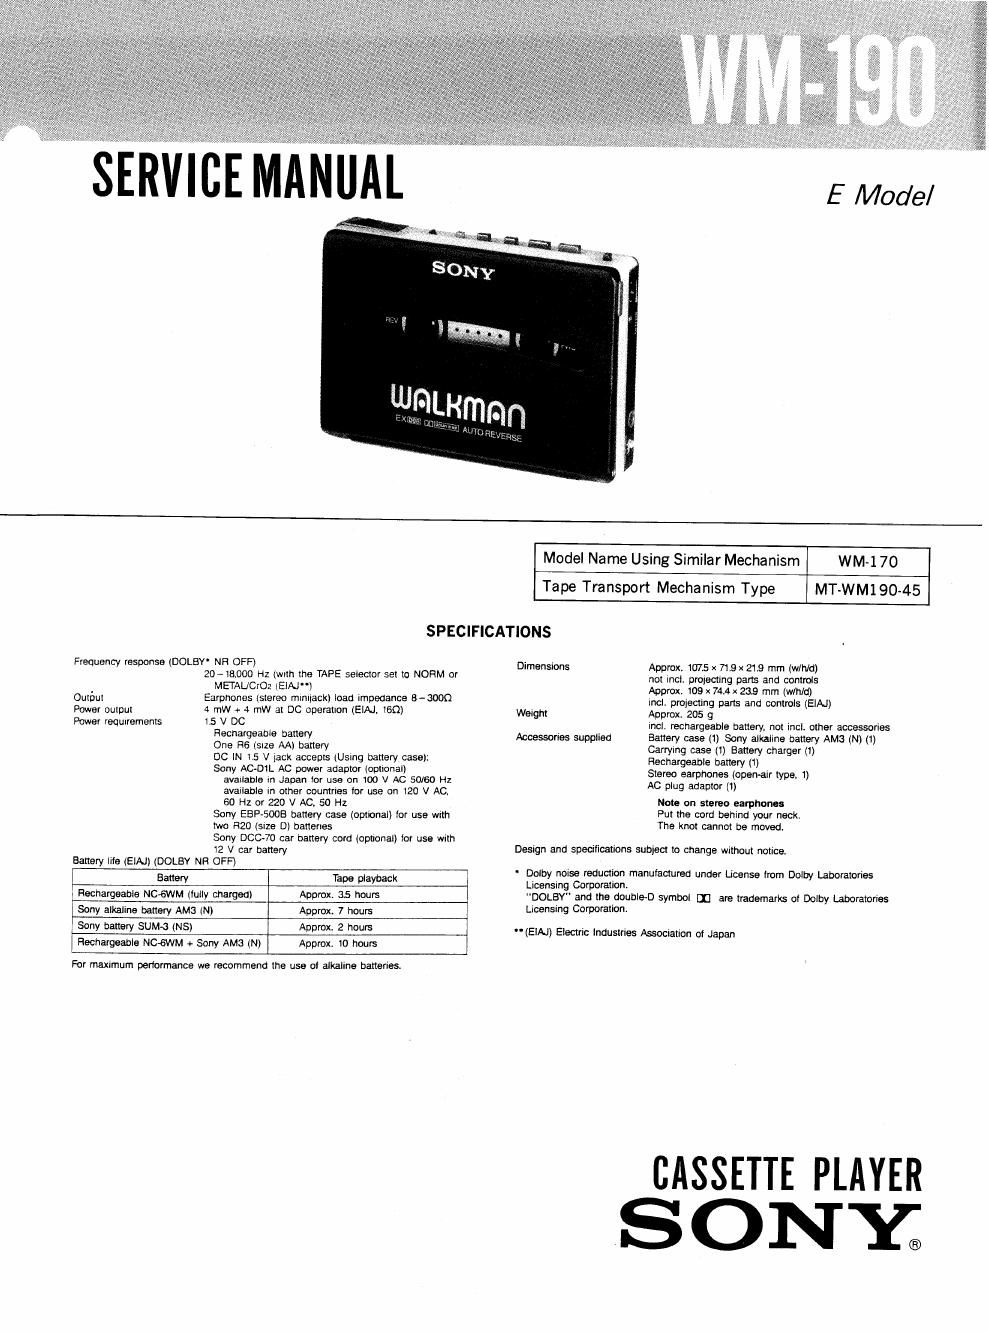 sony wm 190 service manual